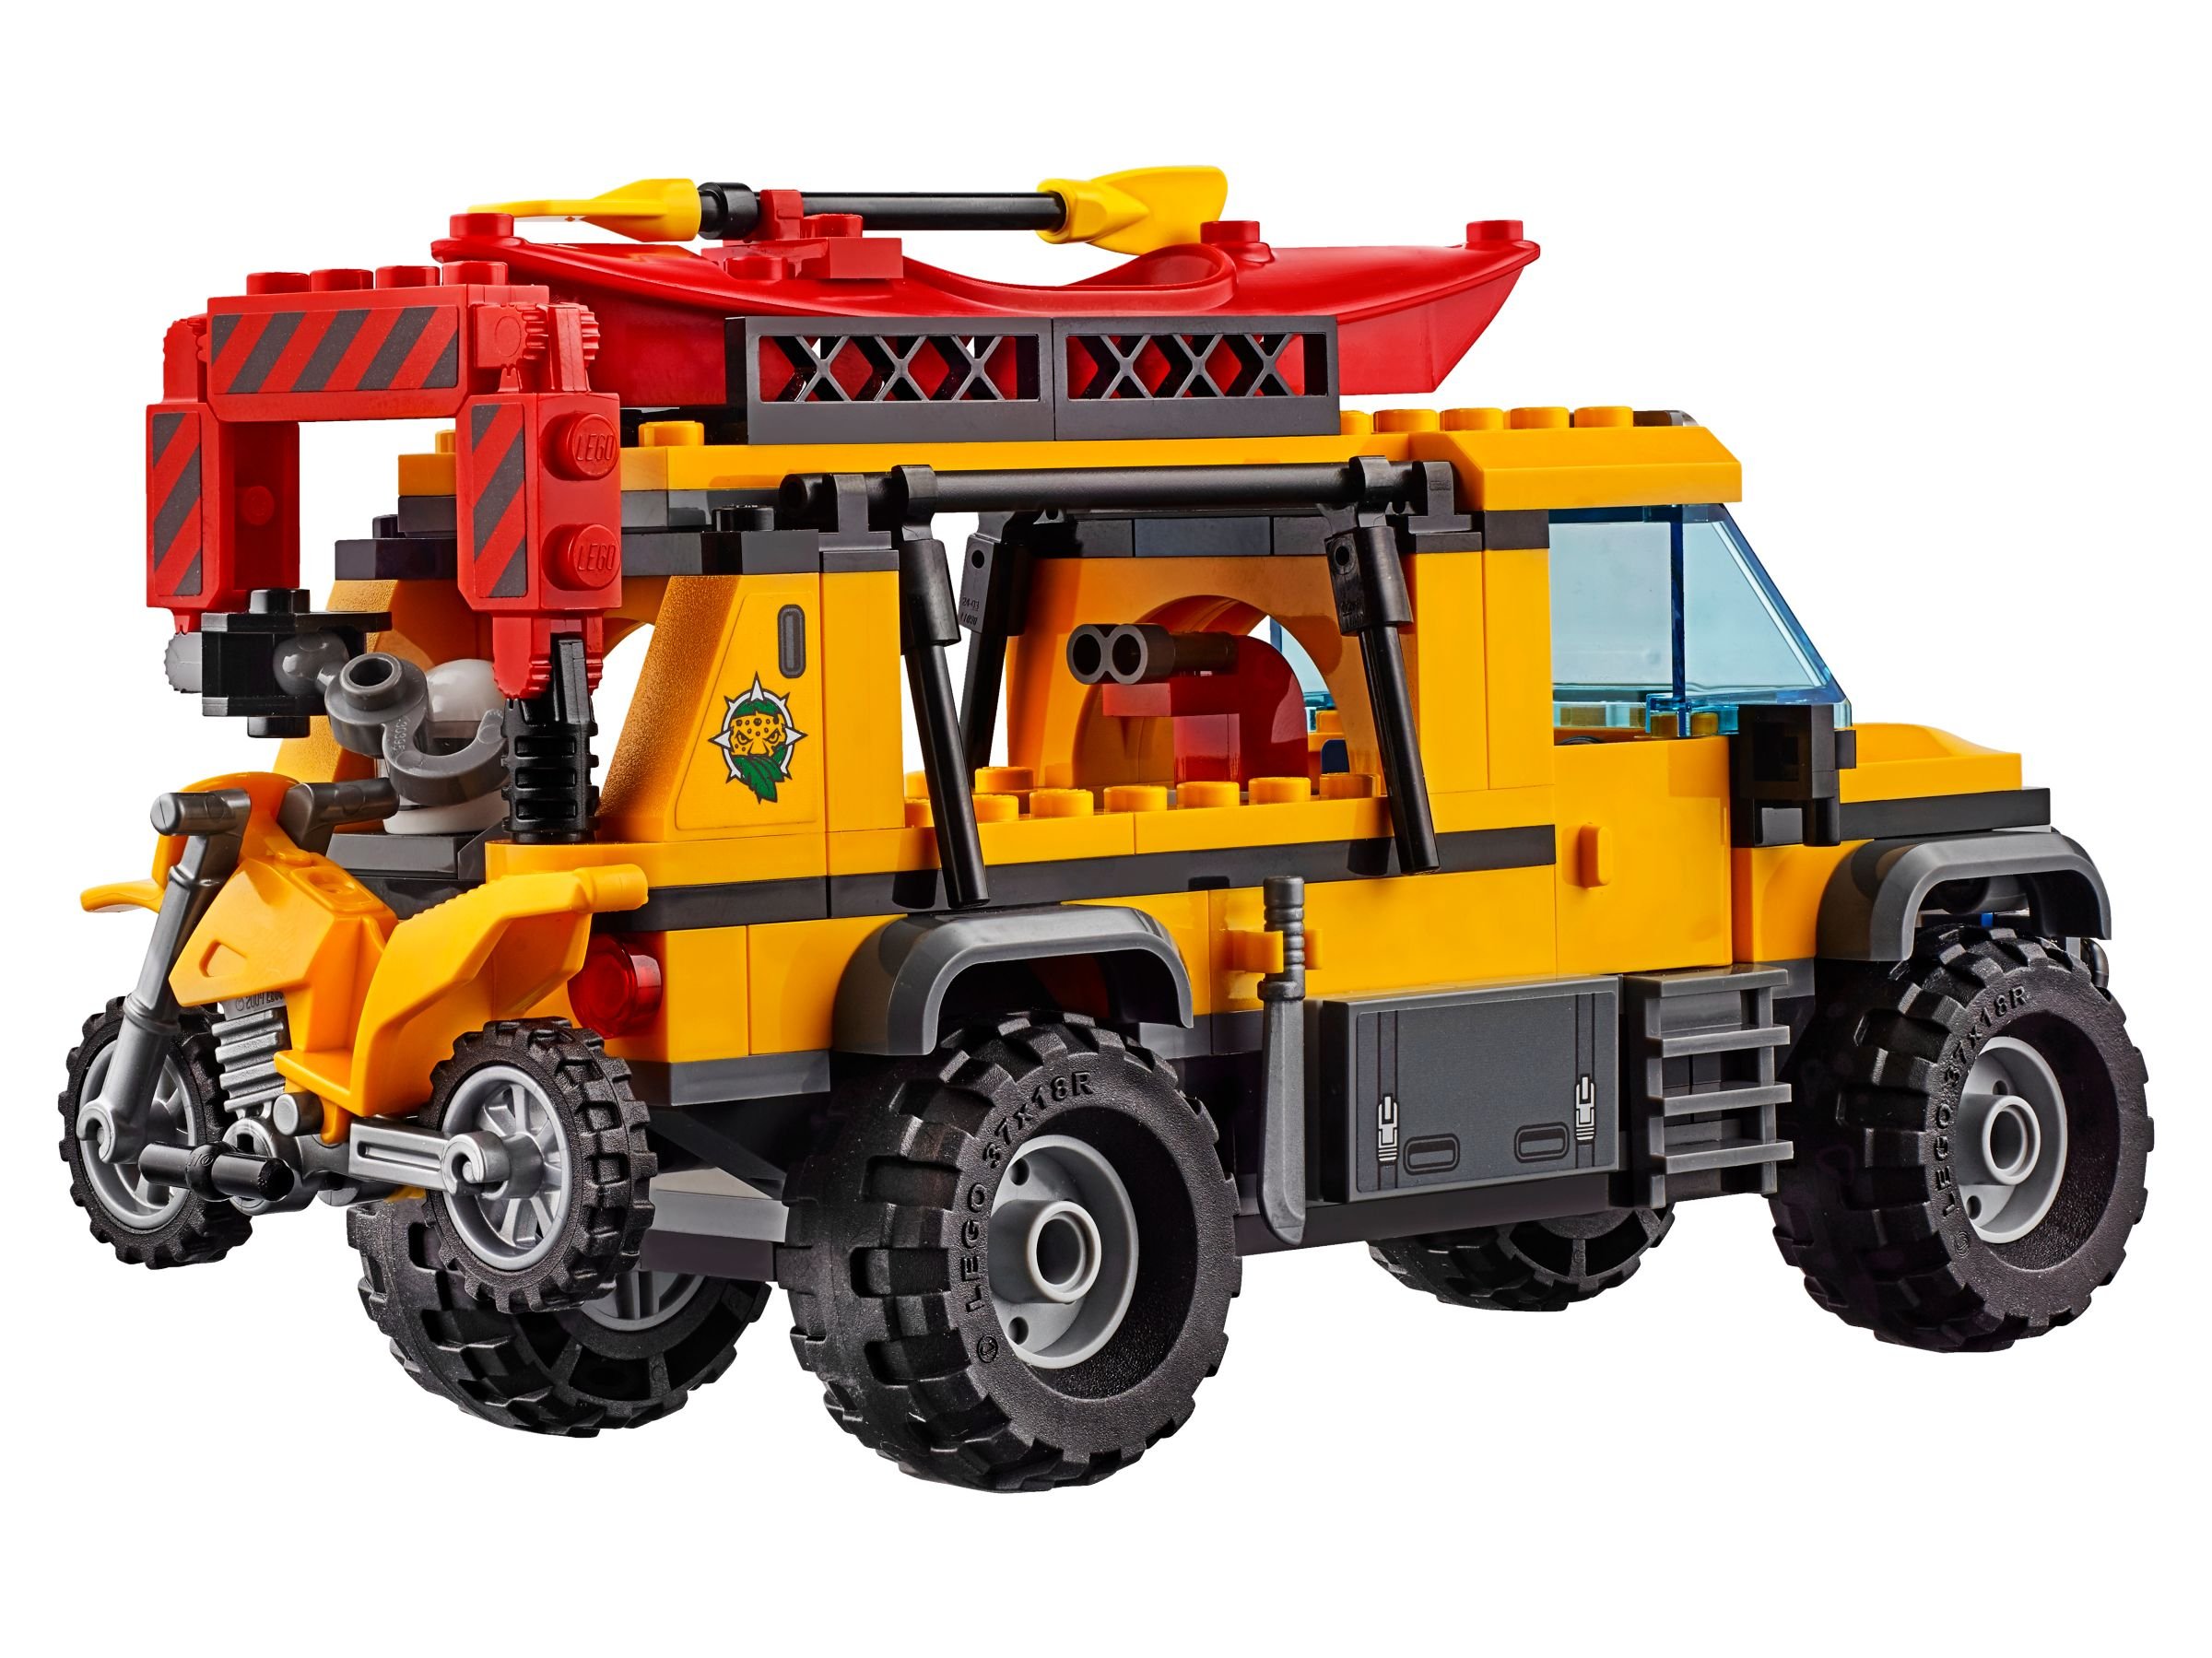 LEGO City 60161 Dschungel-Forschungsstation LEGO_60161_alt6.jpg